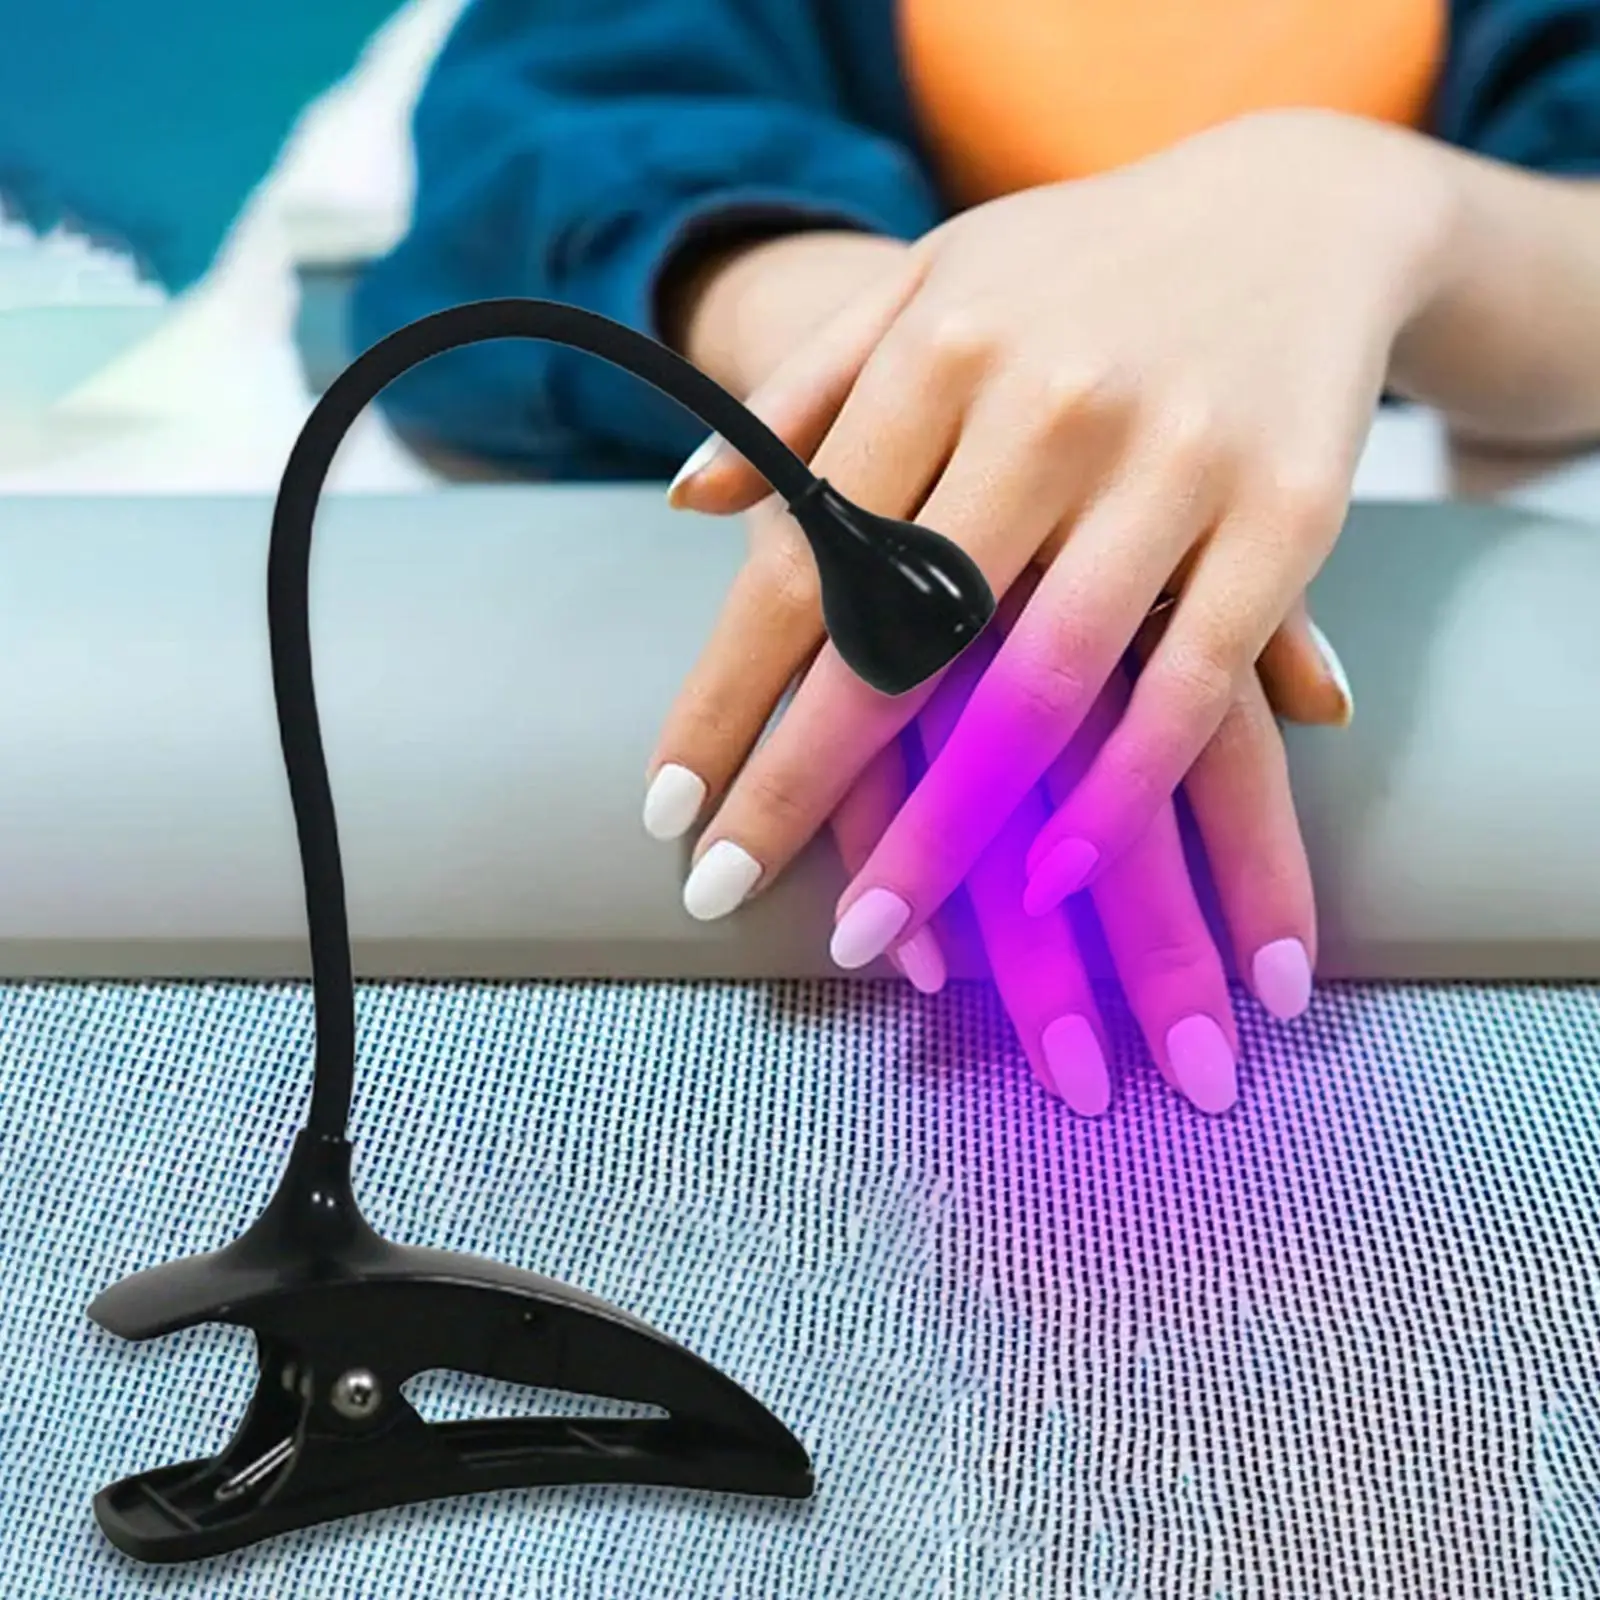 Nail Polish Curing Light 5W Nail Lamp for Nail Extension Acrylic False Nails